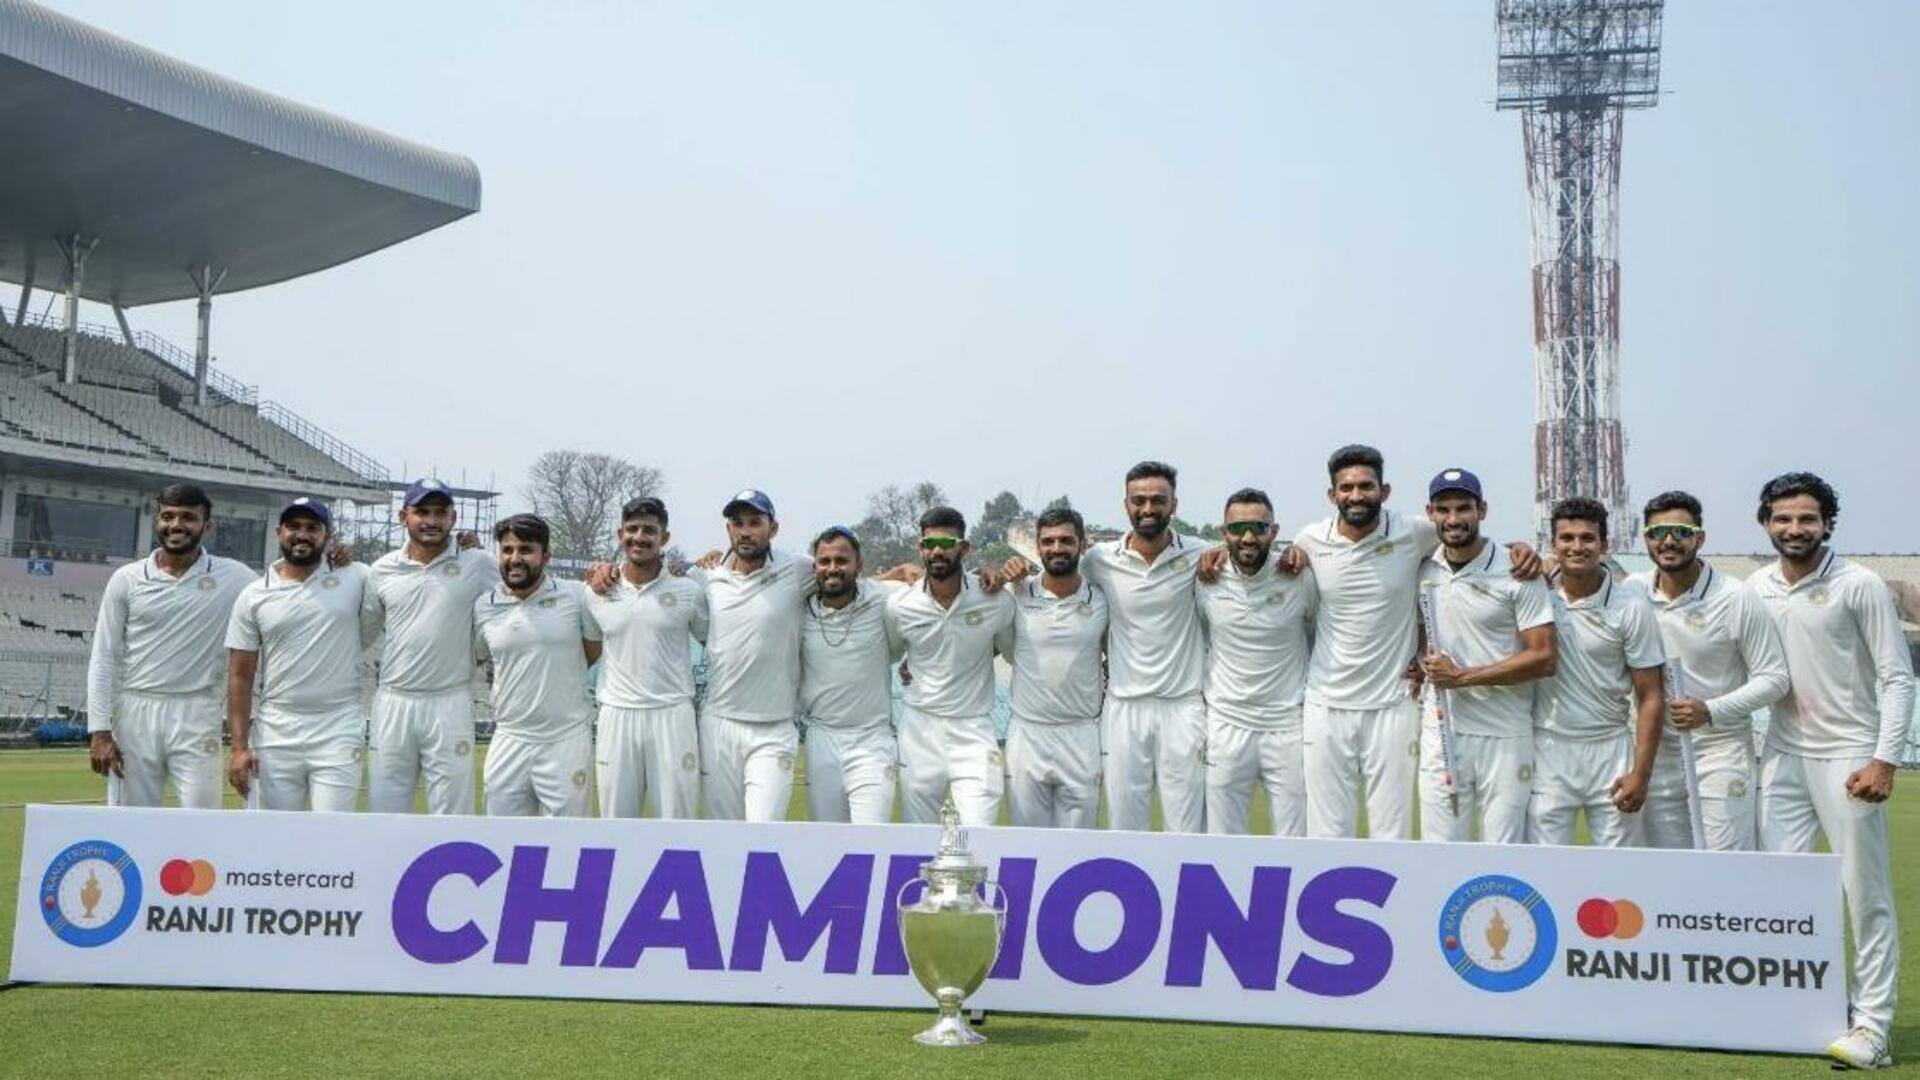 रणजी ट्रॉफी 2022-23: दूसरी बार विजेता बना सौराष्ट्र, जानिए इस सीजन के जरुरी आंकड़े